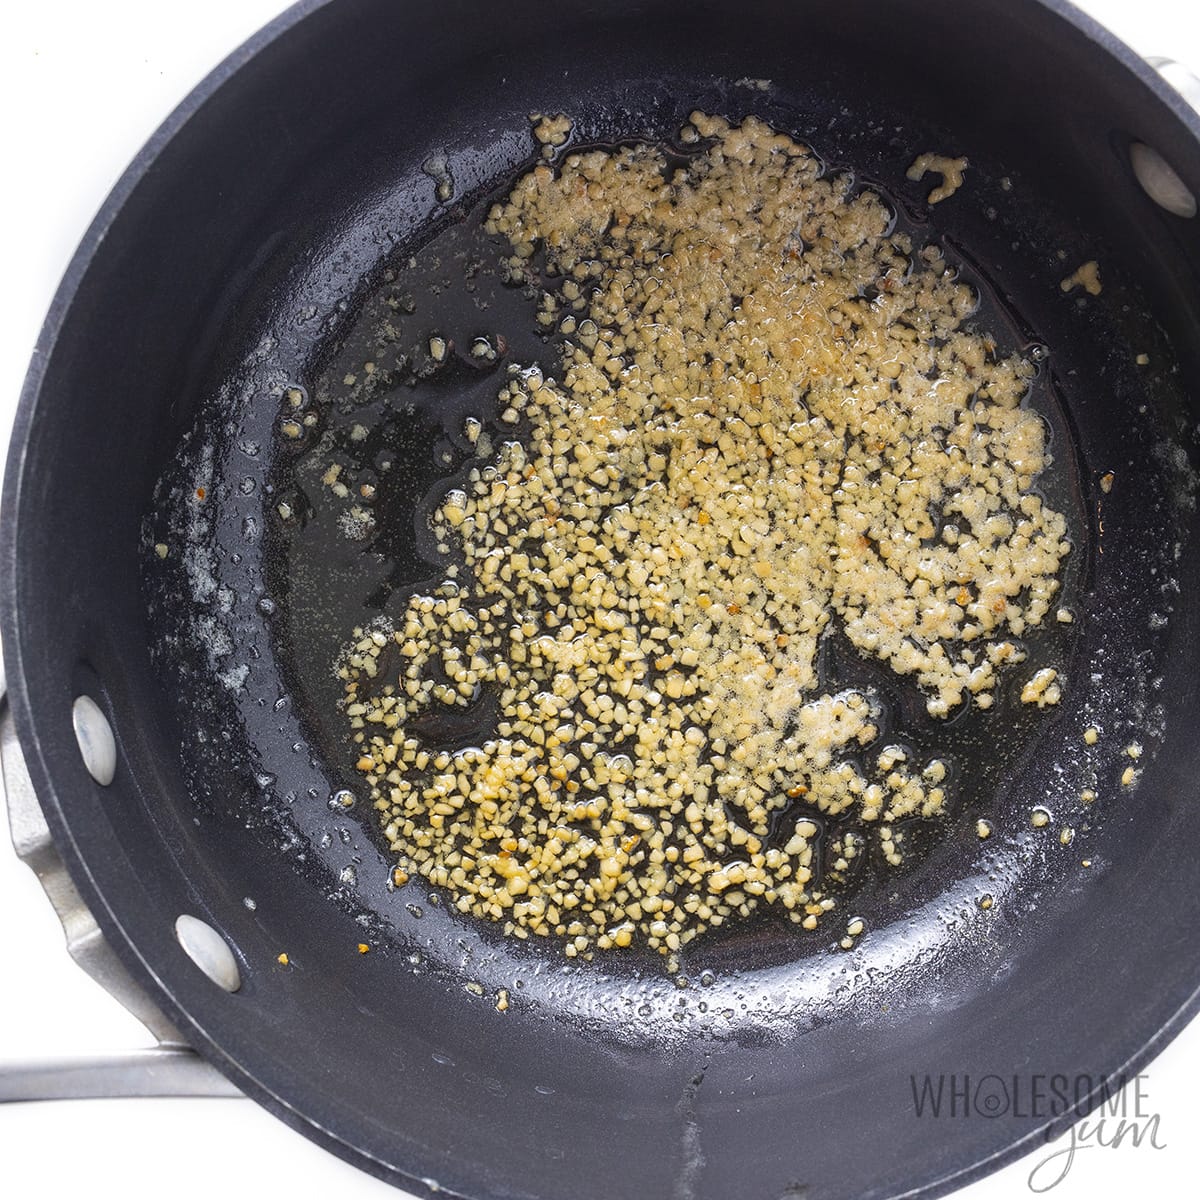 Sauteed minced garlic in a saucepan.